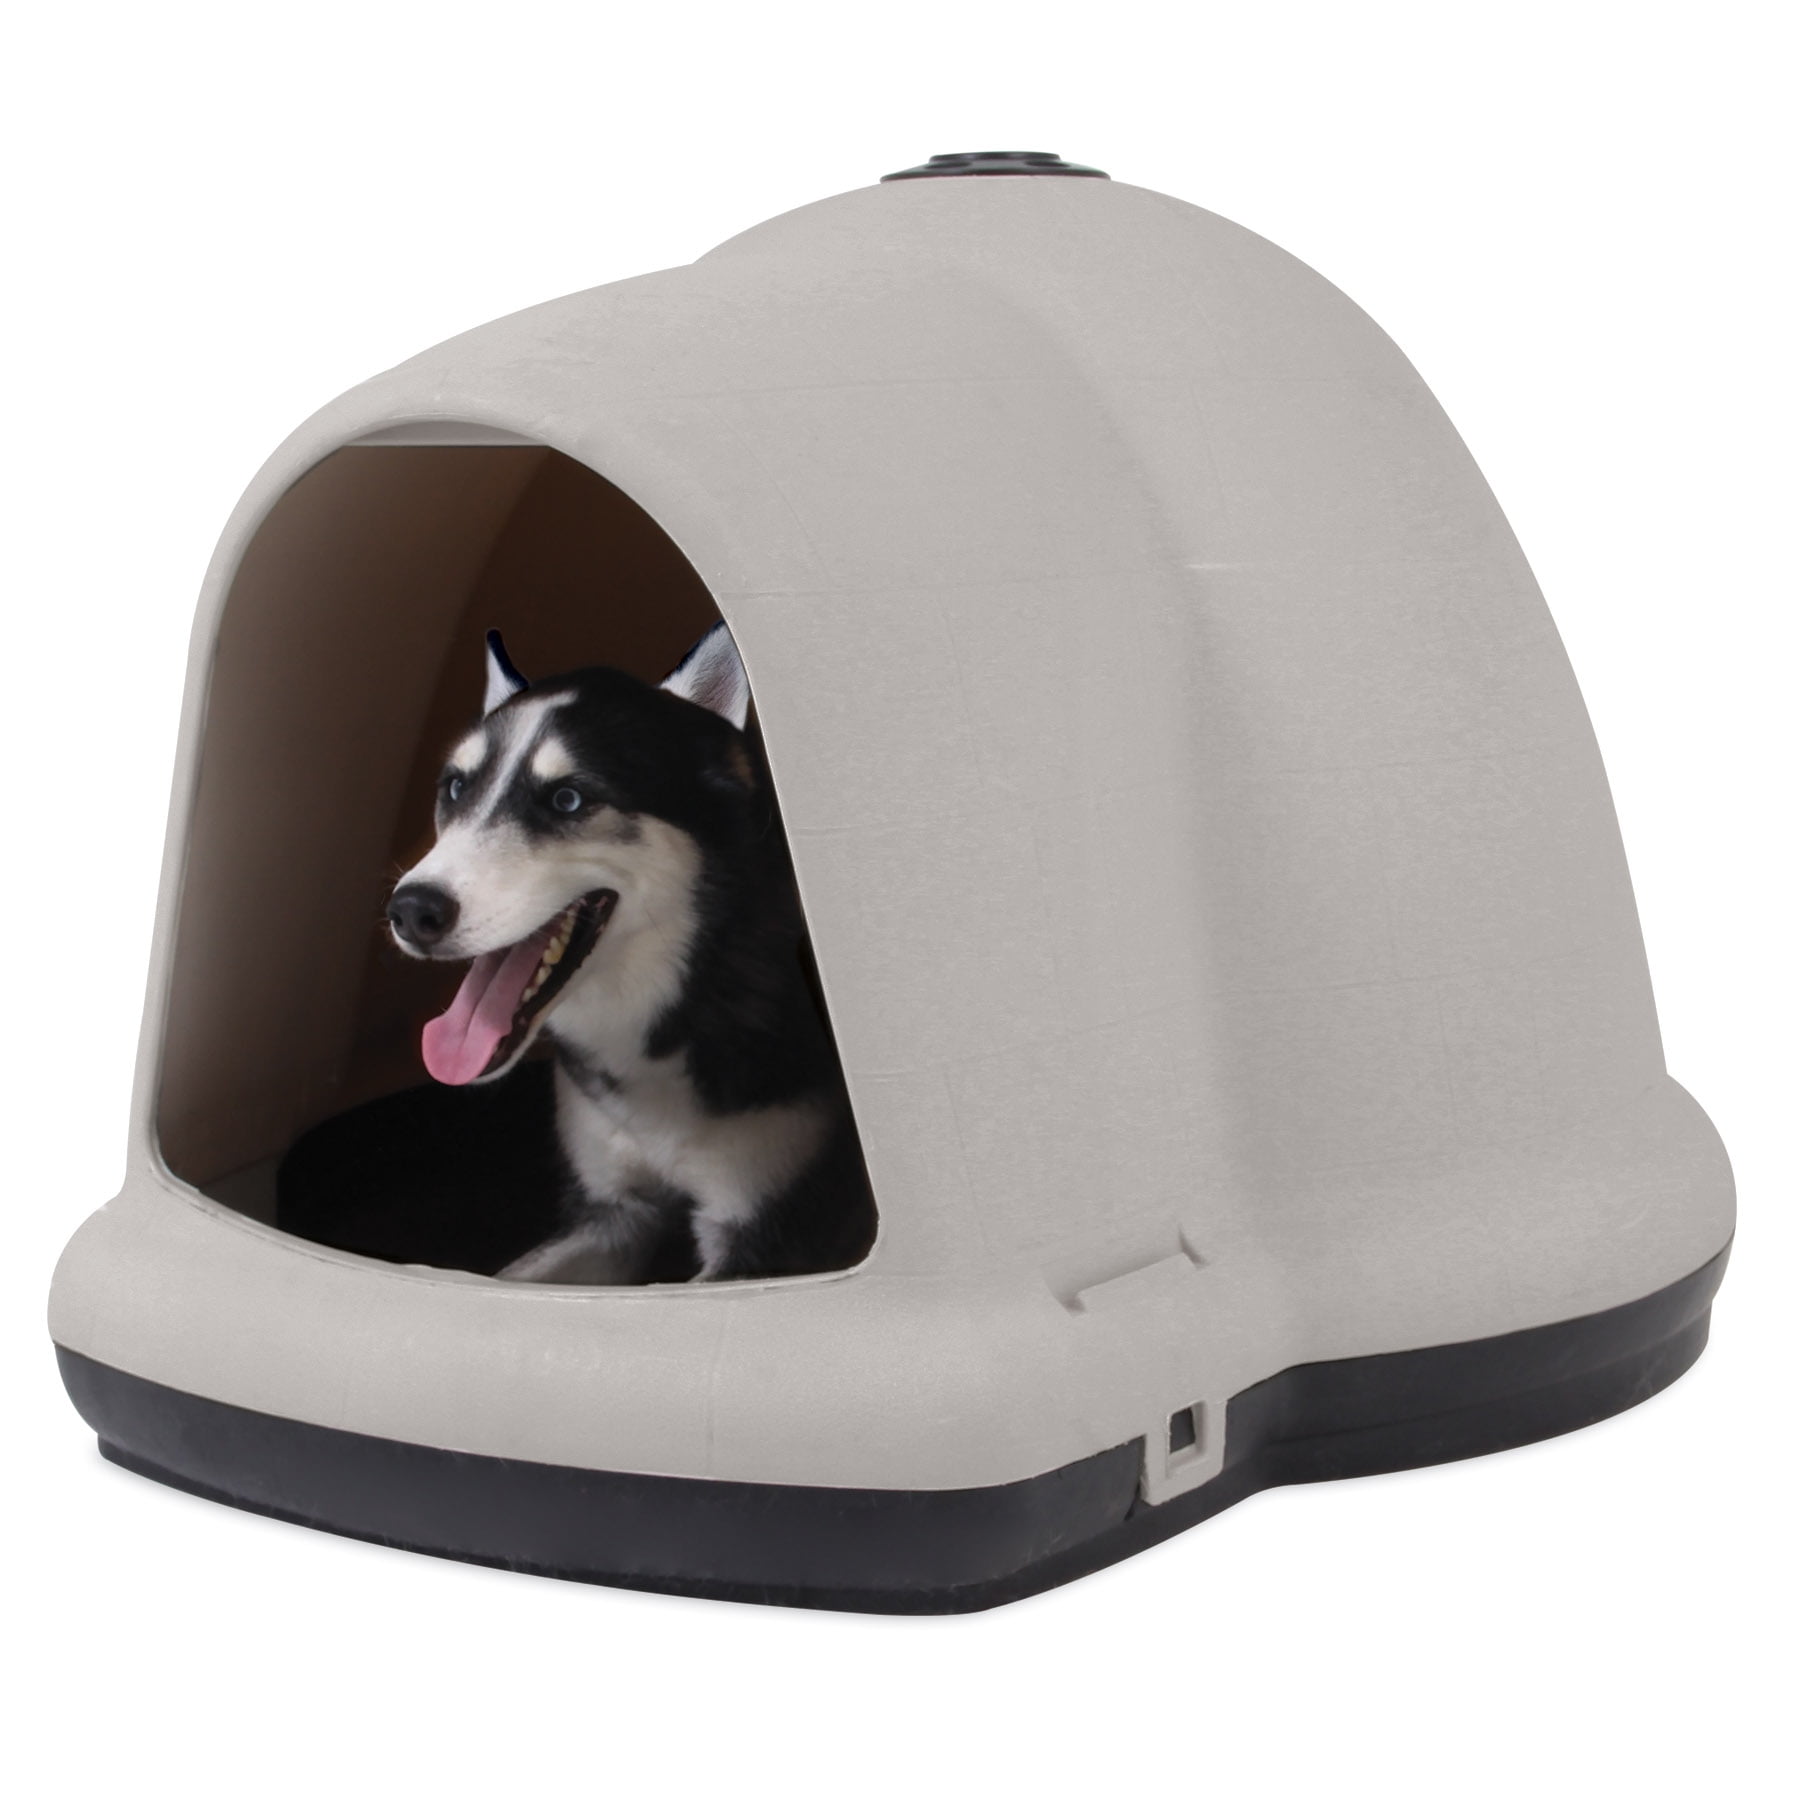 extra large igloo dog house